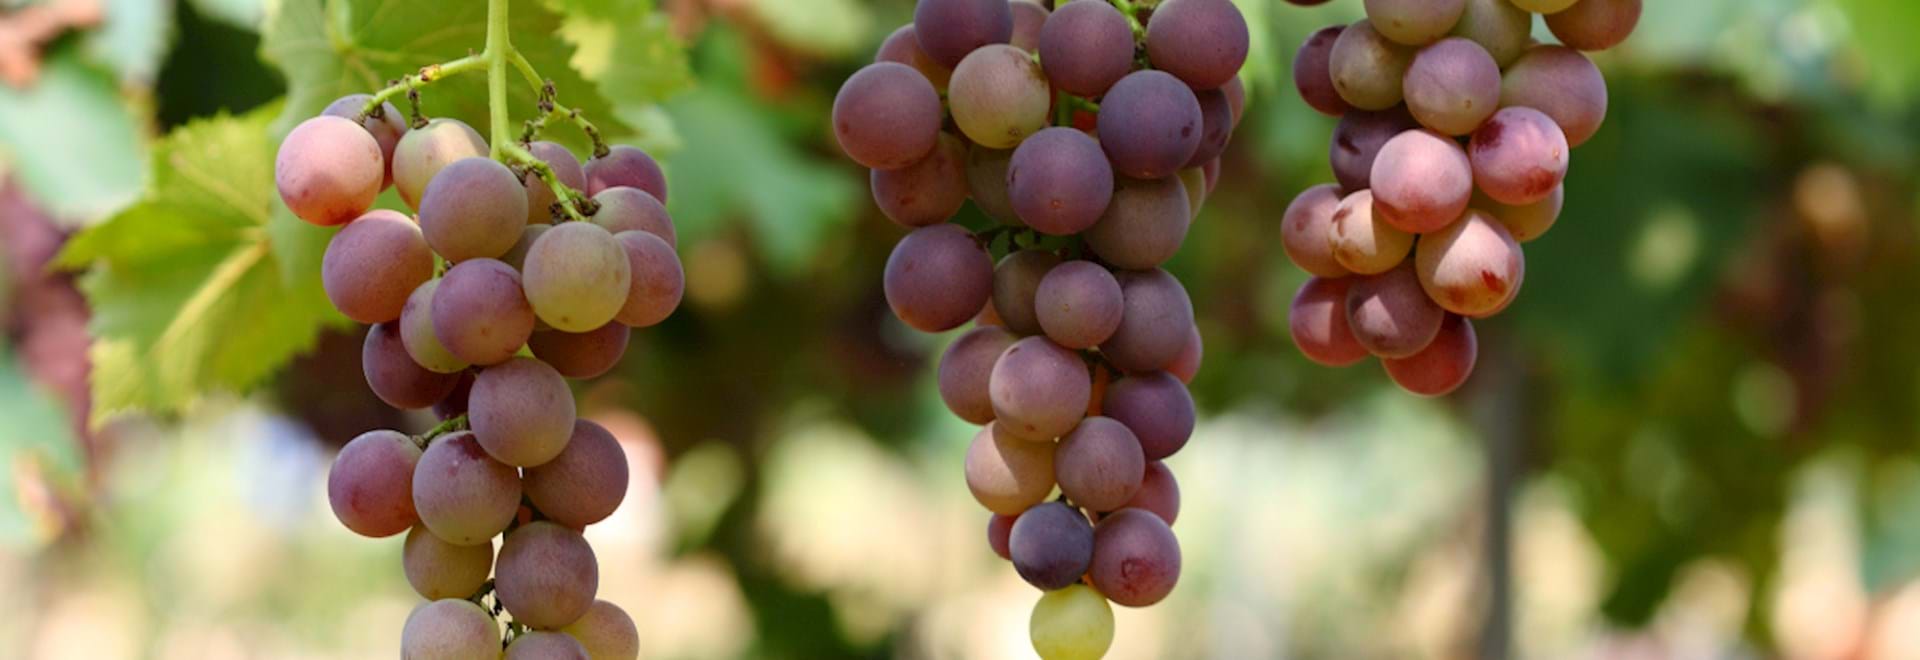 grapes in a vineyard in Frascati